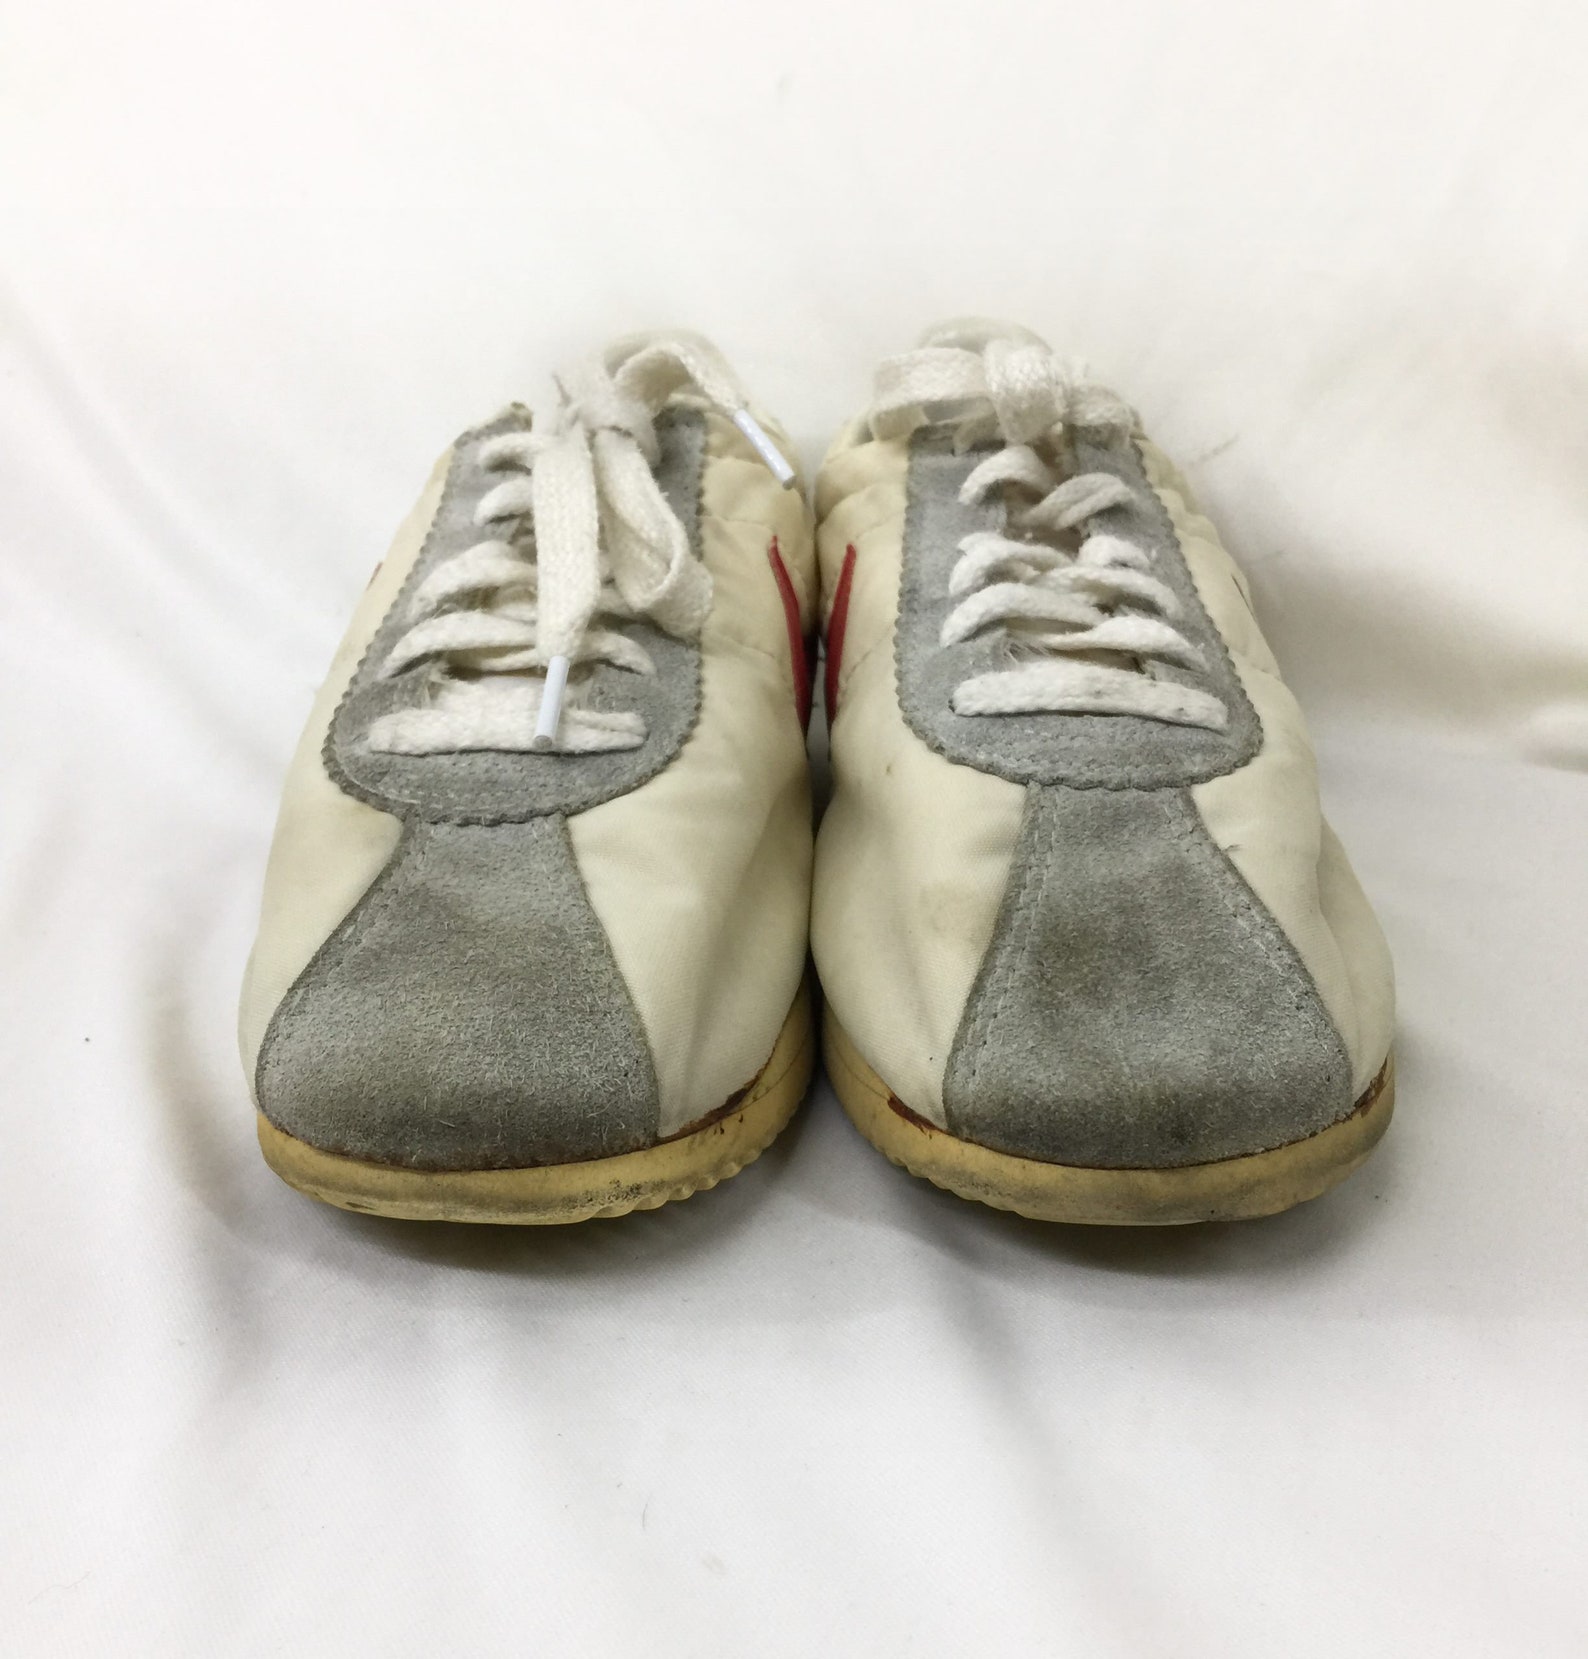 Raro Nike senorita cortez zapatos vintage /zapatillas nike | Etsy